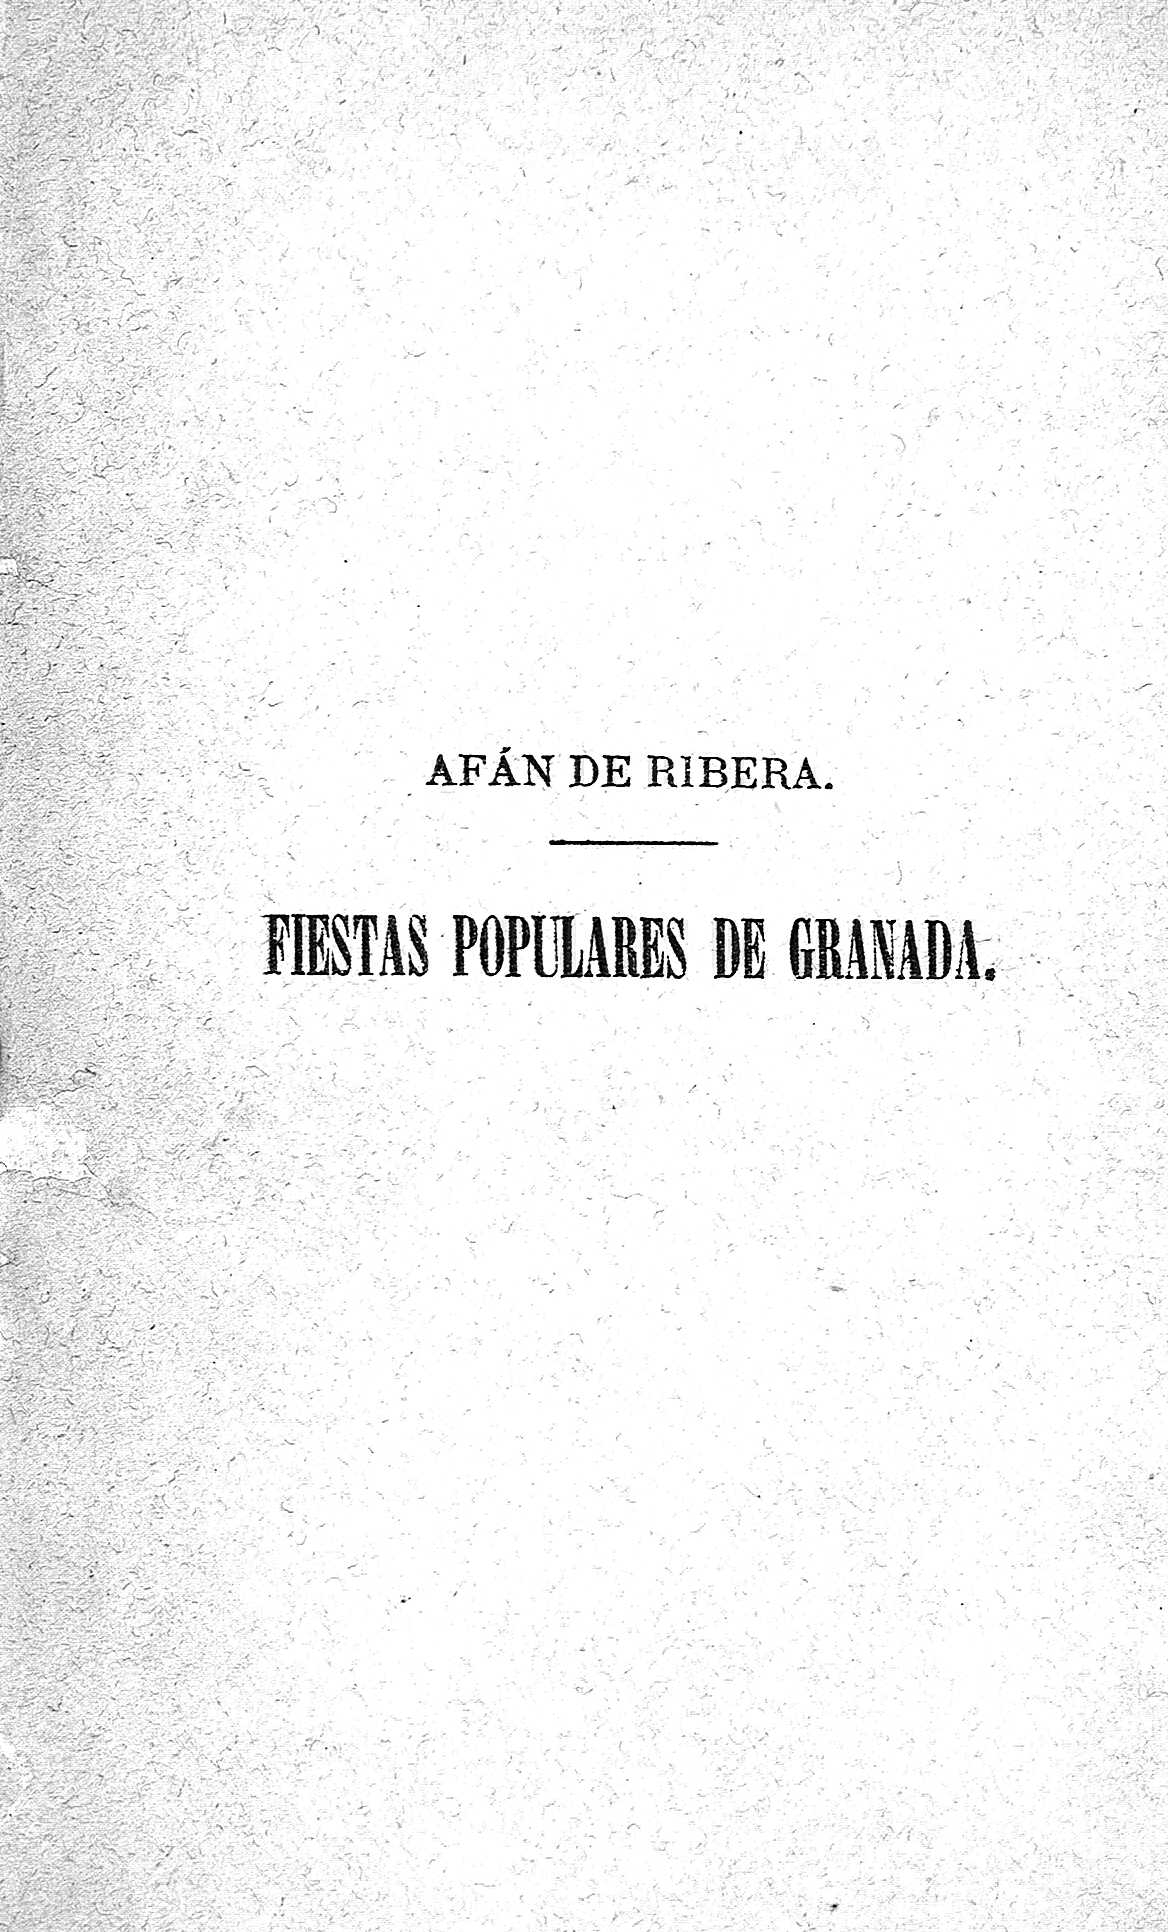 Fiestas populares de Granada